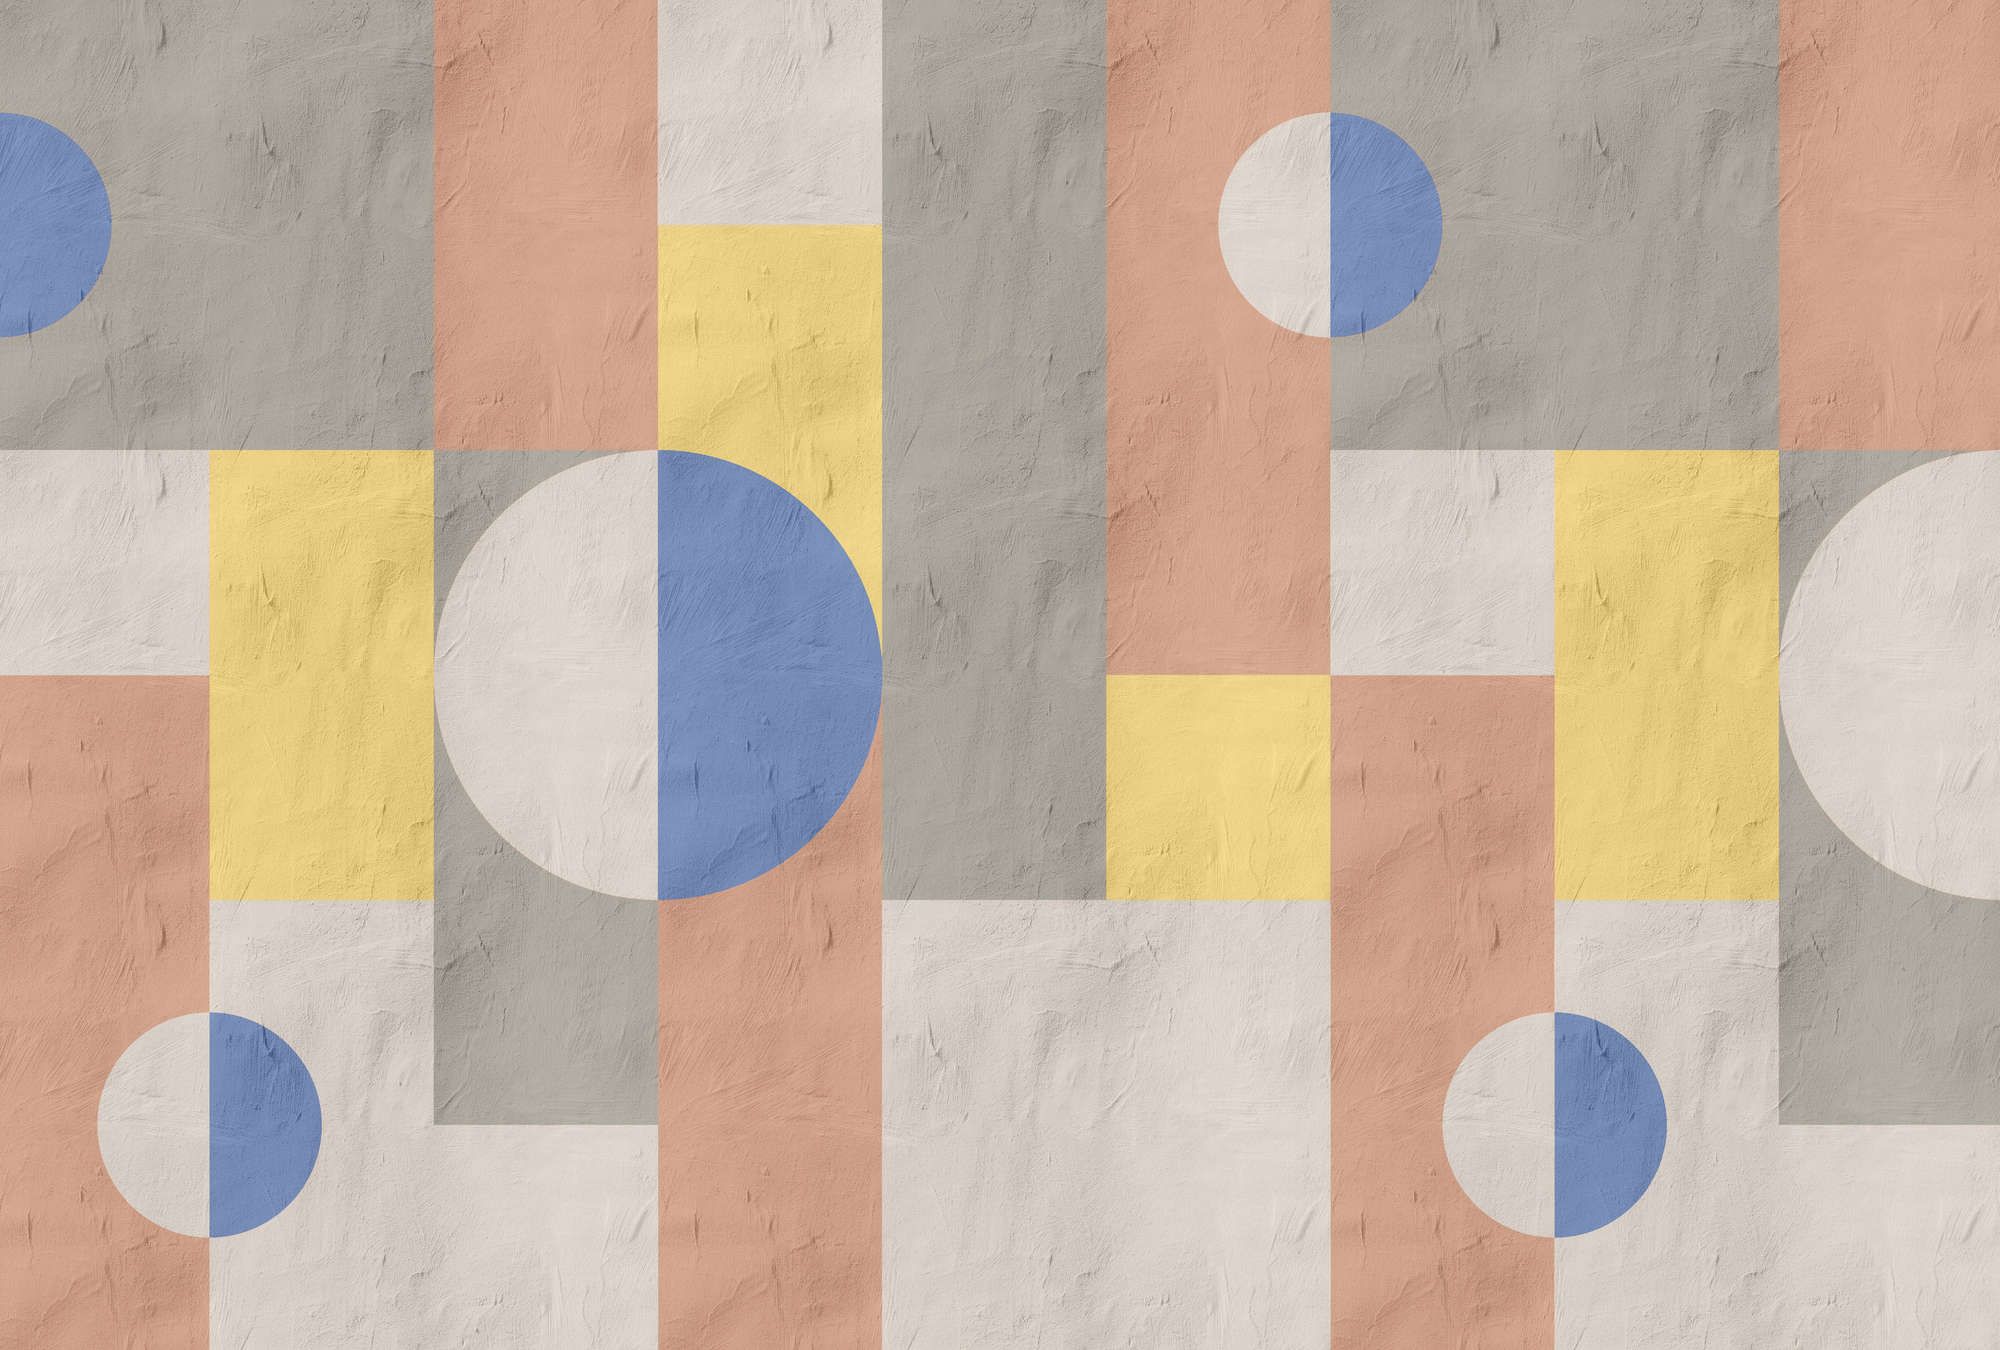             Digital behang »estrella 1« - Grafisch patroon in klei gipslook - Blauw, geel, oranje | Licht structuurvlies
        